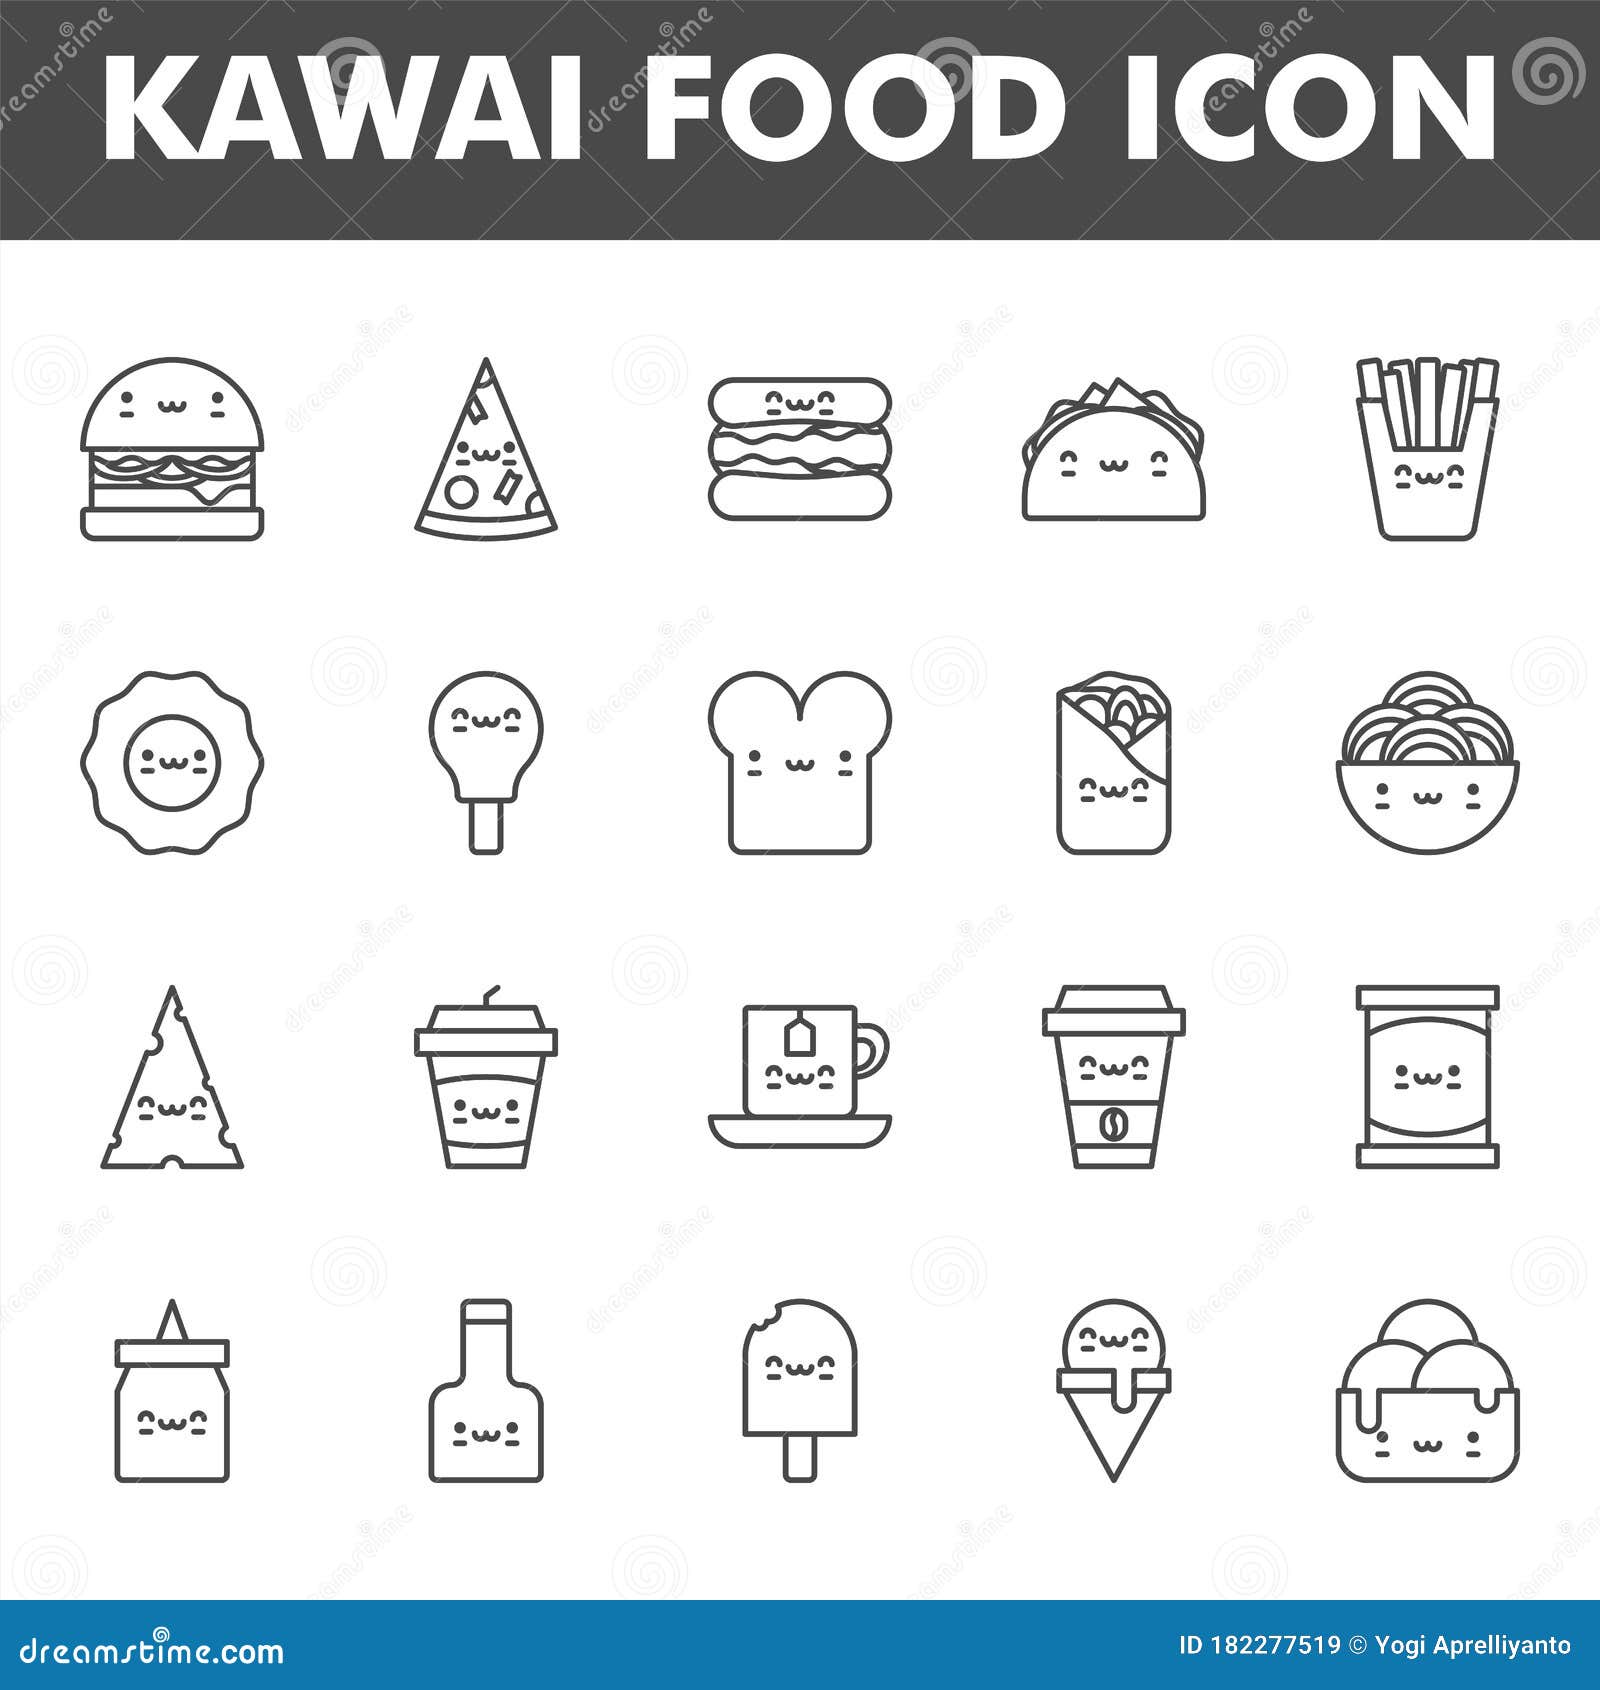 Bộ biểu tượng thức ăn đáng yêu Kawai: Bộ biểu tượng thức ăn đáng yêu Kawai sẽ mang đến cho bạn một trải nghiệm tuyệt vời và độc đáo. Thiết kế những biểu tượng thức ăn đầy màu sắc, tươi vui và đáng yêu giúp tạo sự thân thiện với người dùng. Cùng chiêm ngưỡng hình ảnh liên quan để hiểu thêm về bộ biểu tượng này.